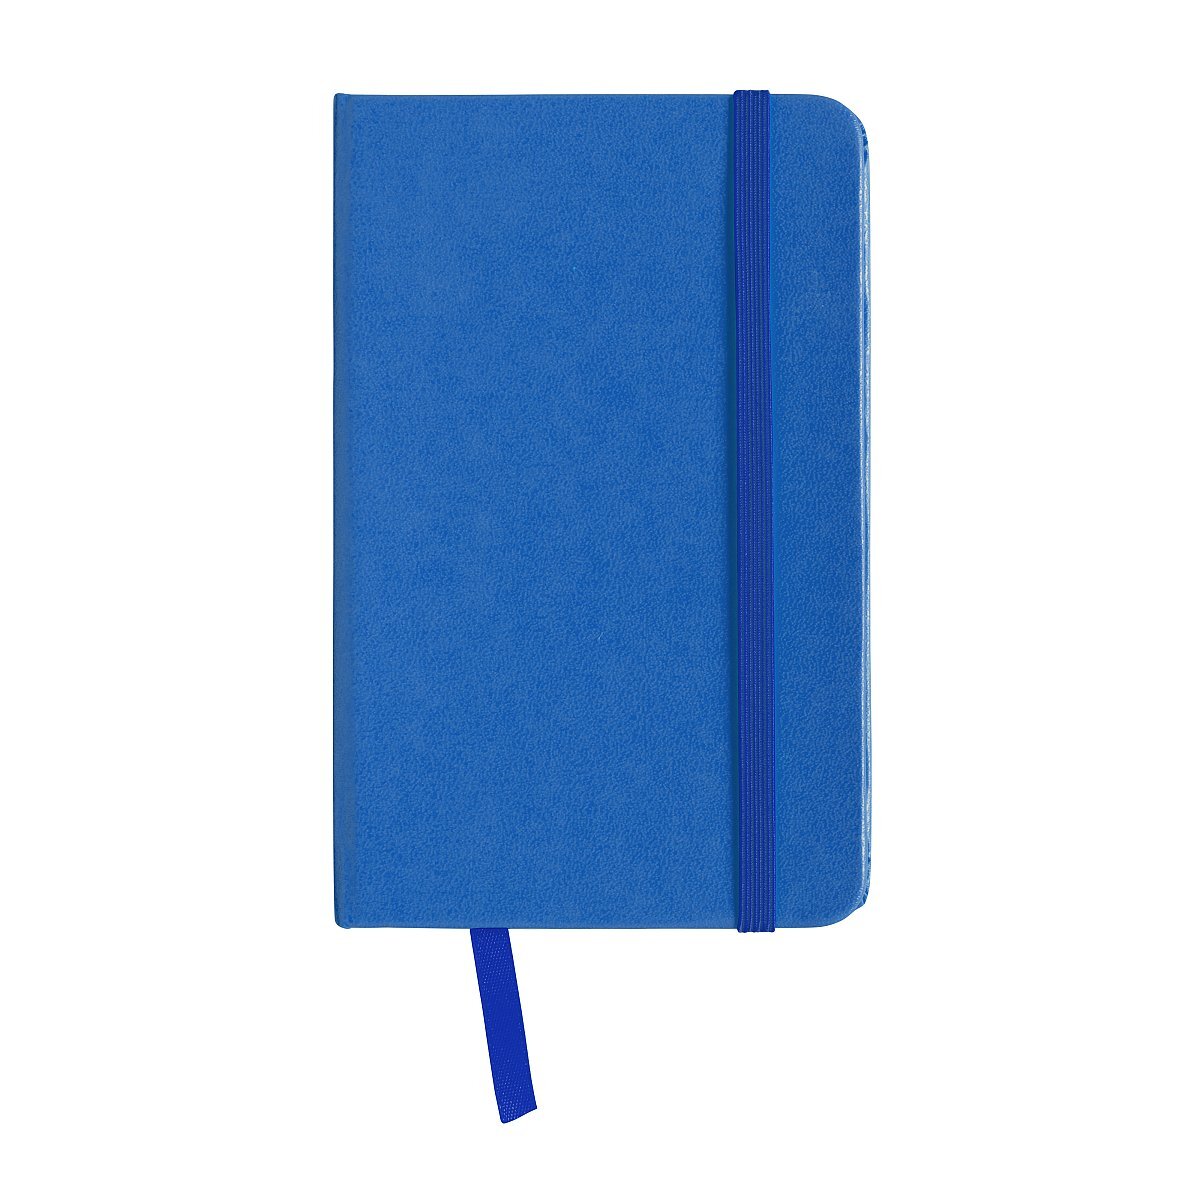 Quaderno in PVC con elastico colorato, fogli bianchi (80 pag.), segnalibro  in raso ❒ Victualia®